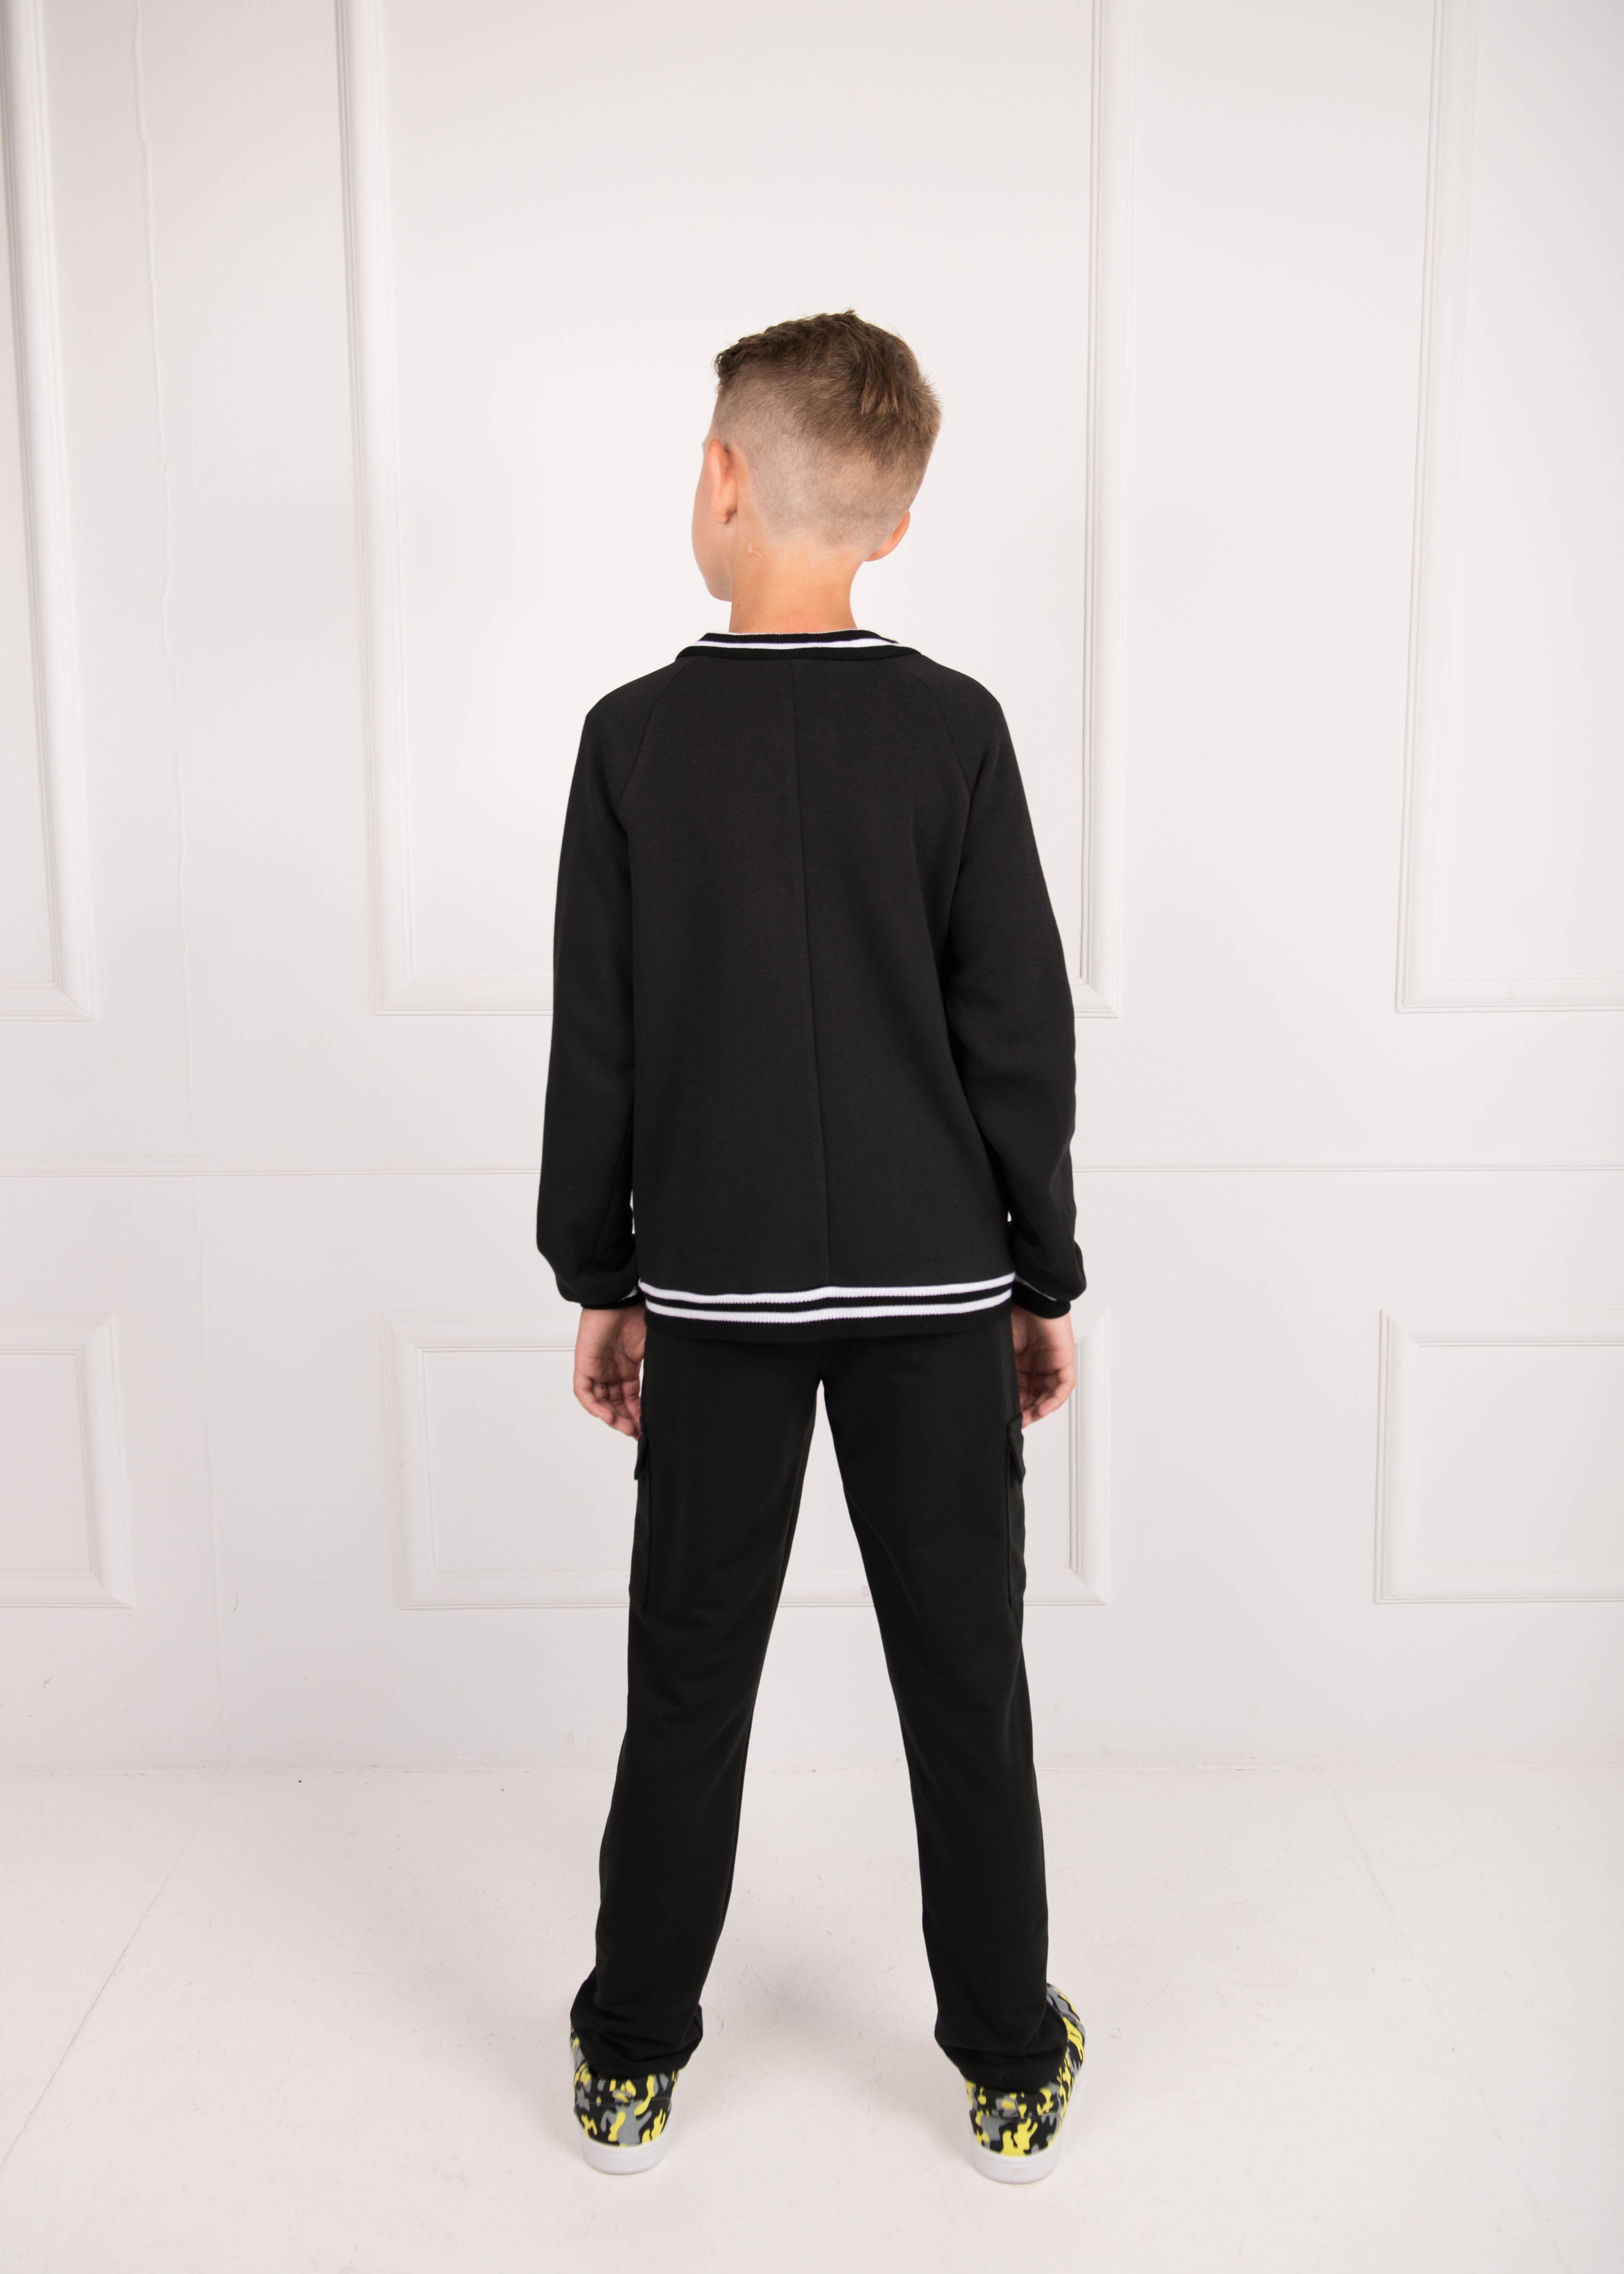 Штаны для мальчика карго черные 02678 в интернет-магазине